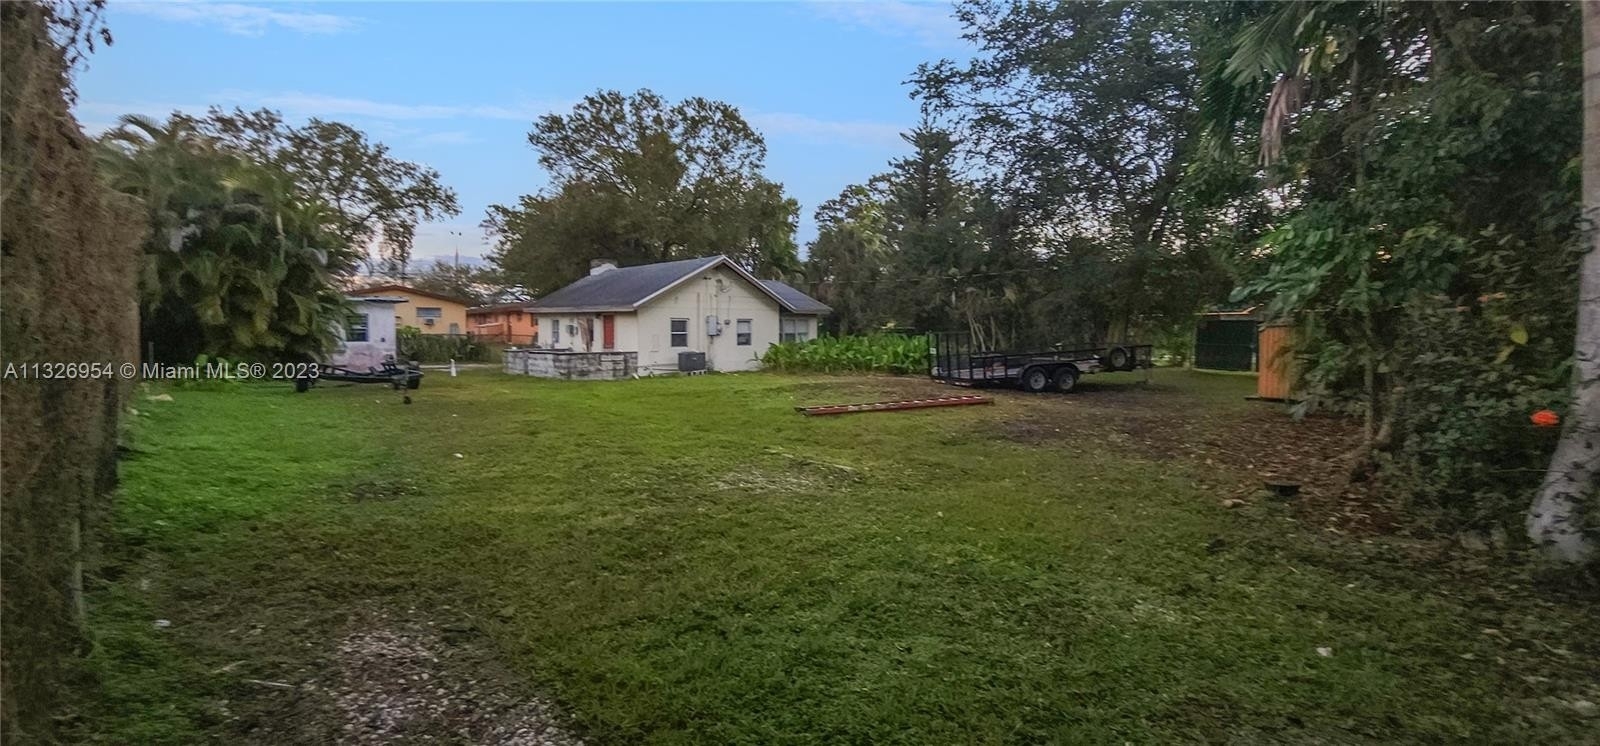 Property at River Oaks, Fort Lauderdale, FL 33315